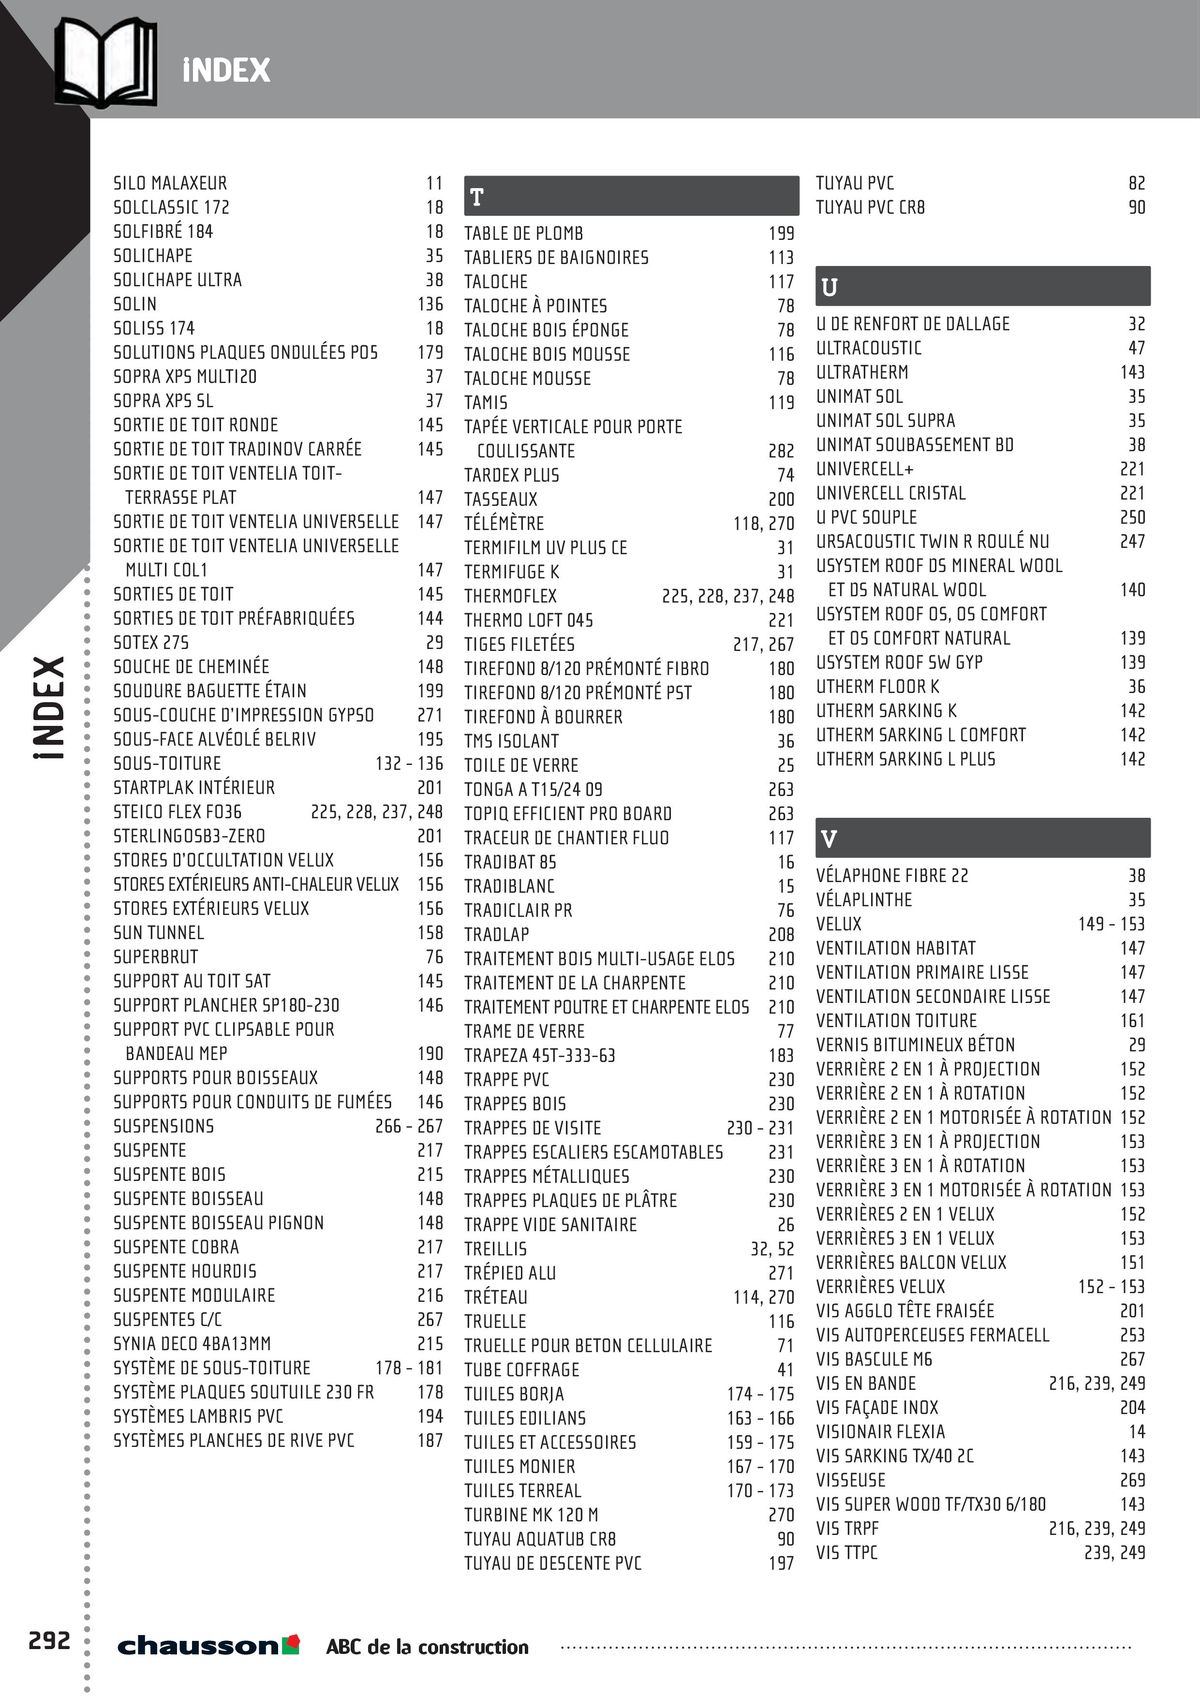 Catalogue ABC de la construction, page 00294